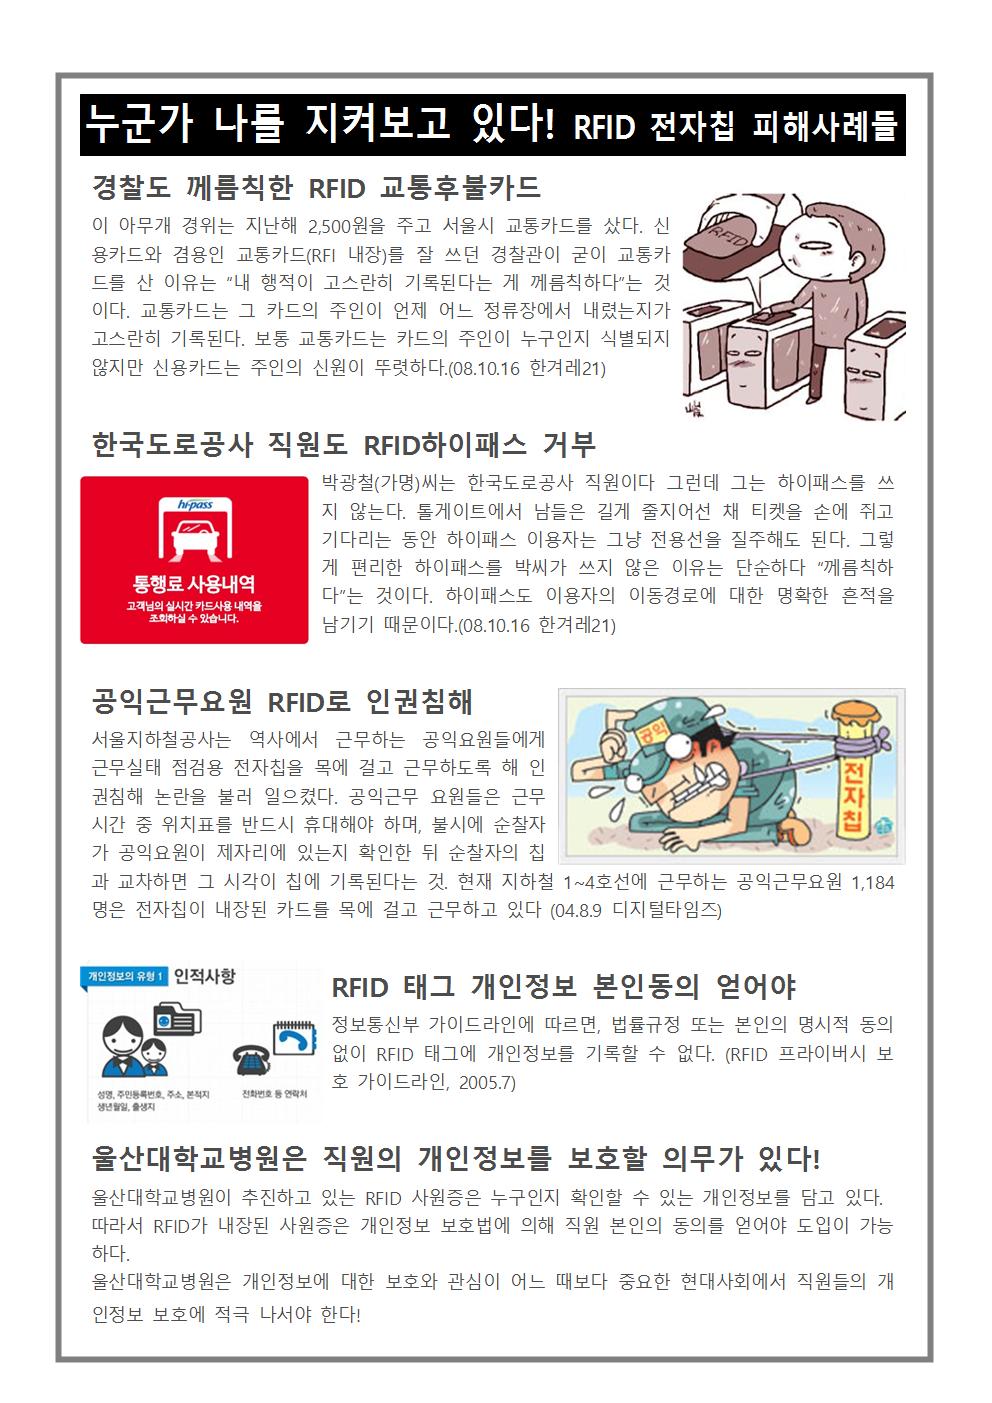 울산대병원분회 2017 주간통신 14호 뒤001.jpg